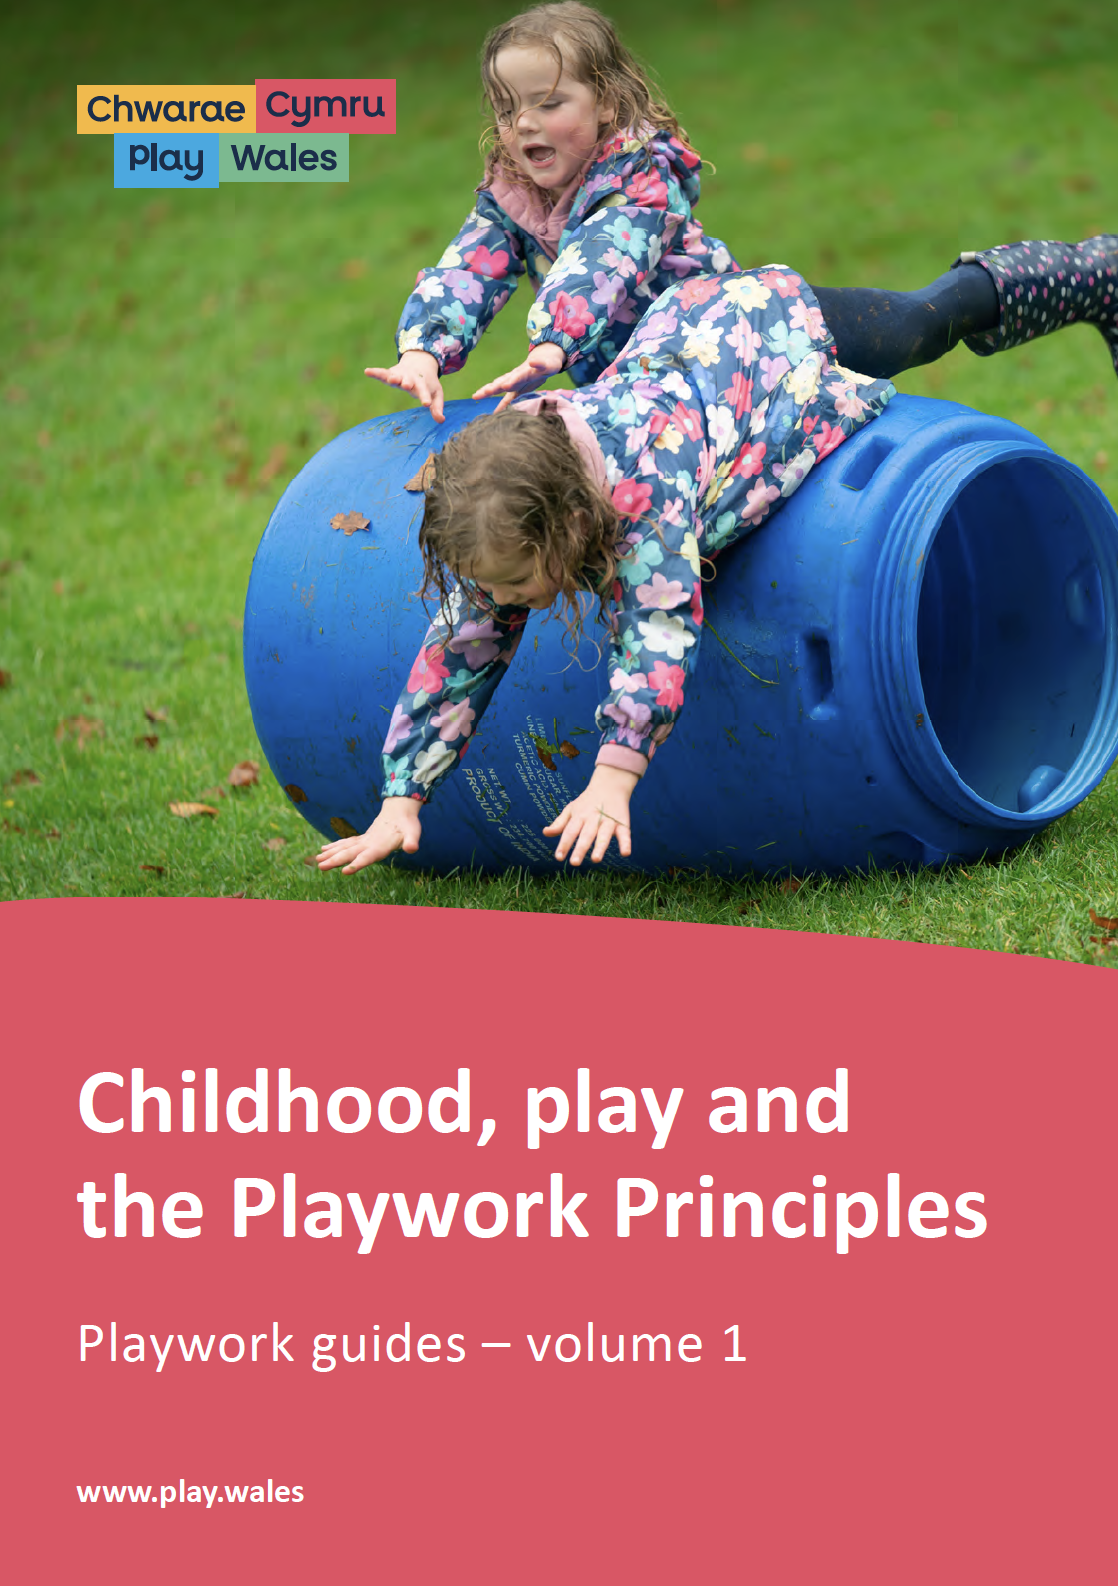 Childhood, play and the Playwork Principles